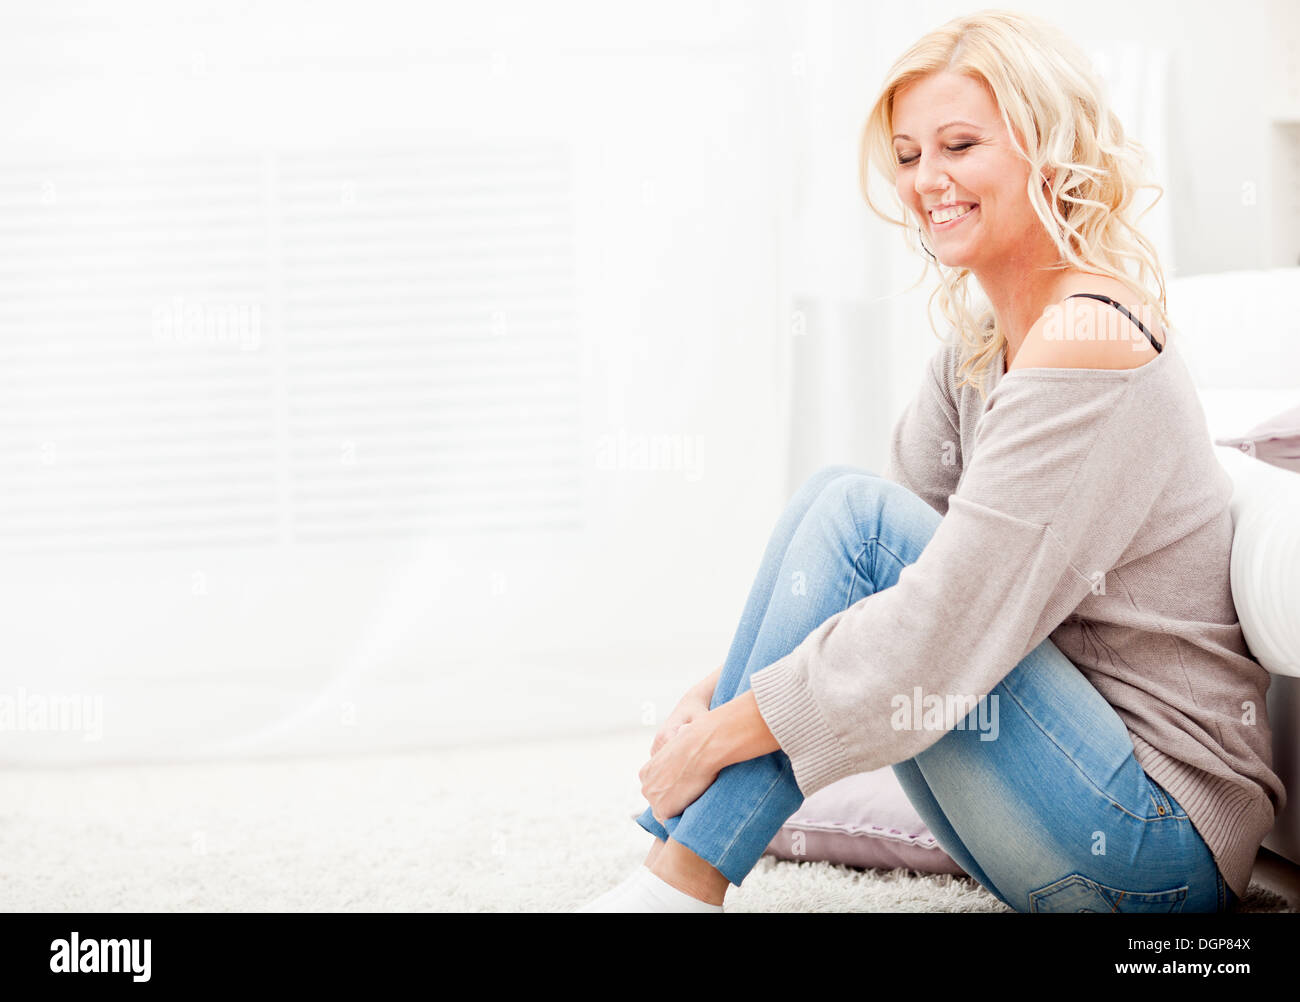 Sorridente ragazza seduta su un tappeto Foto Stock